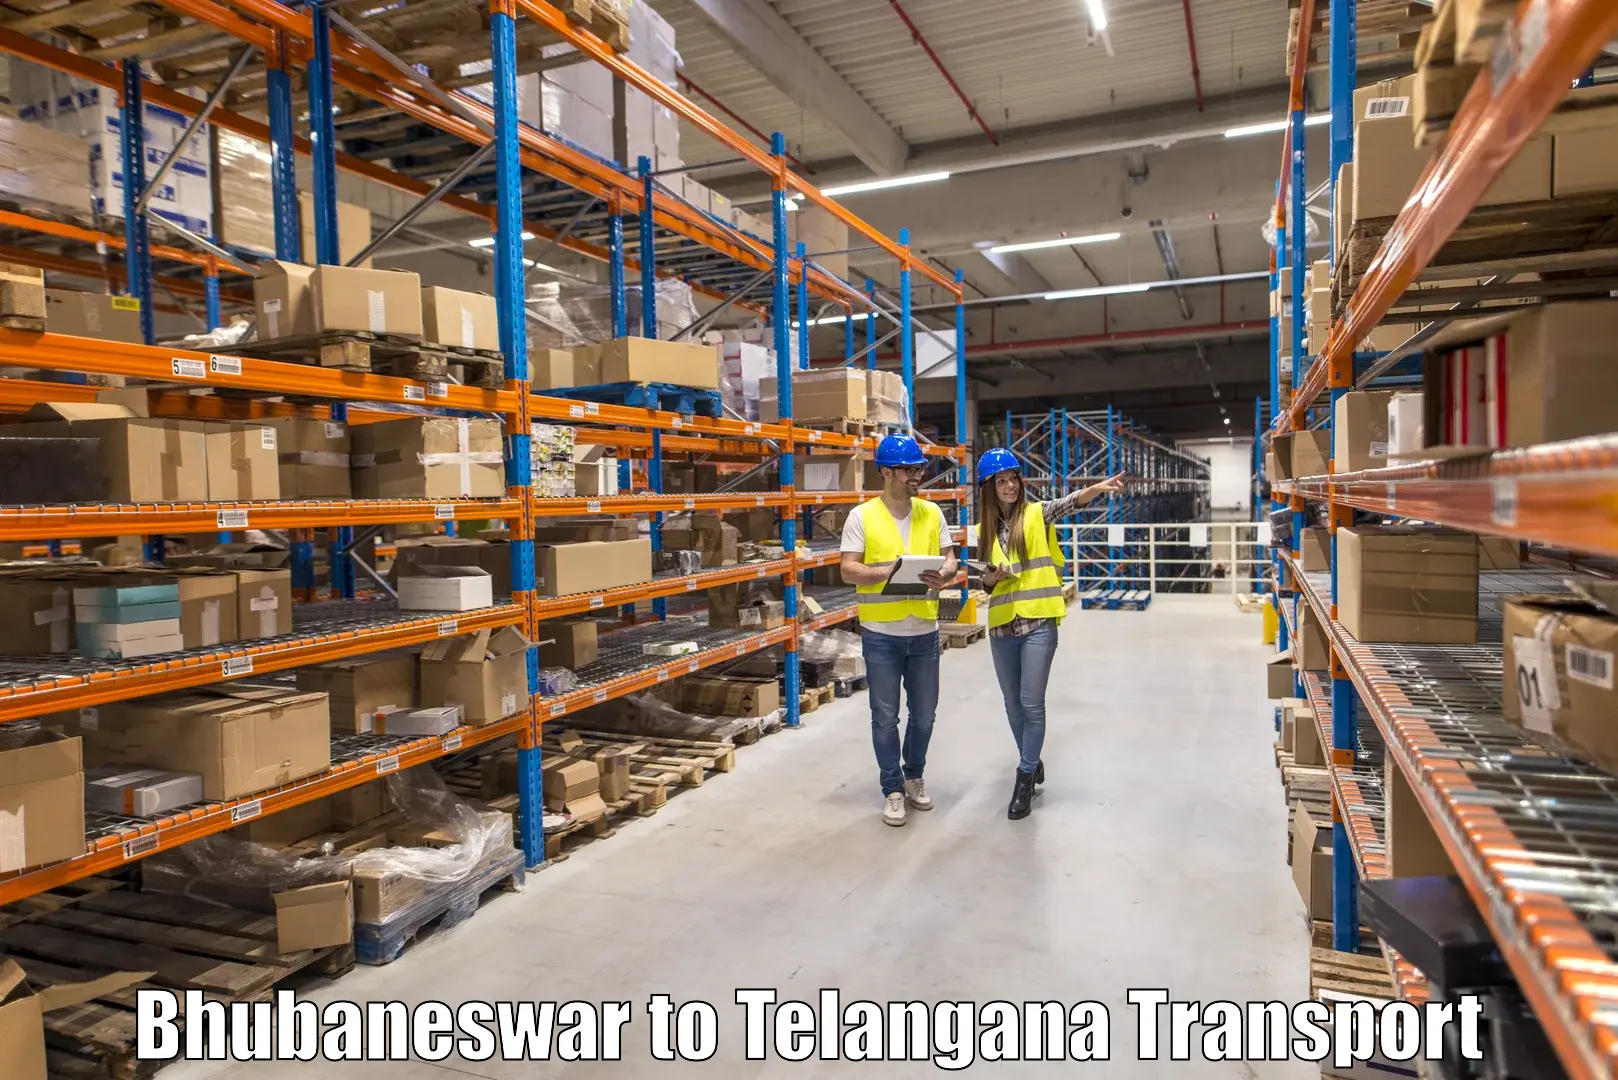 Furniture transport service Bhubaneswar to Kosgi